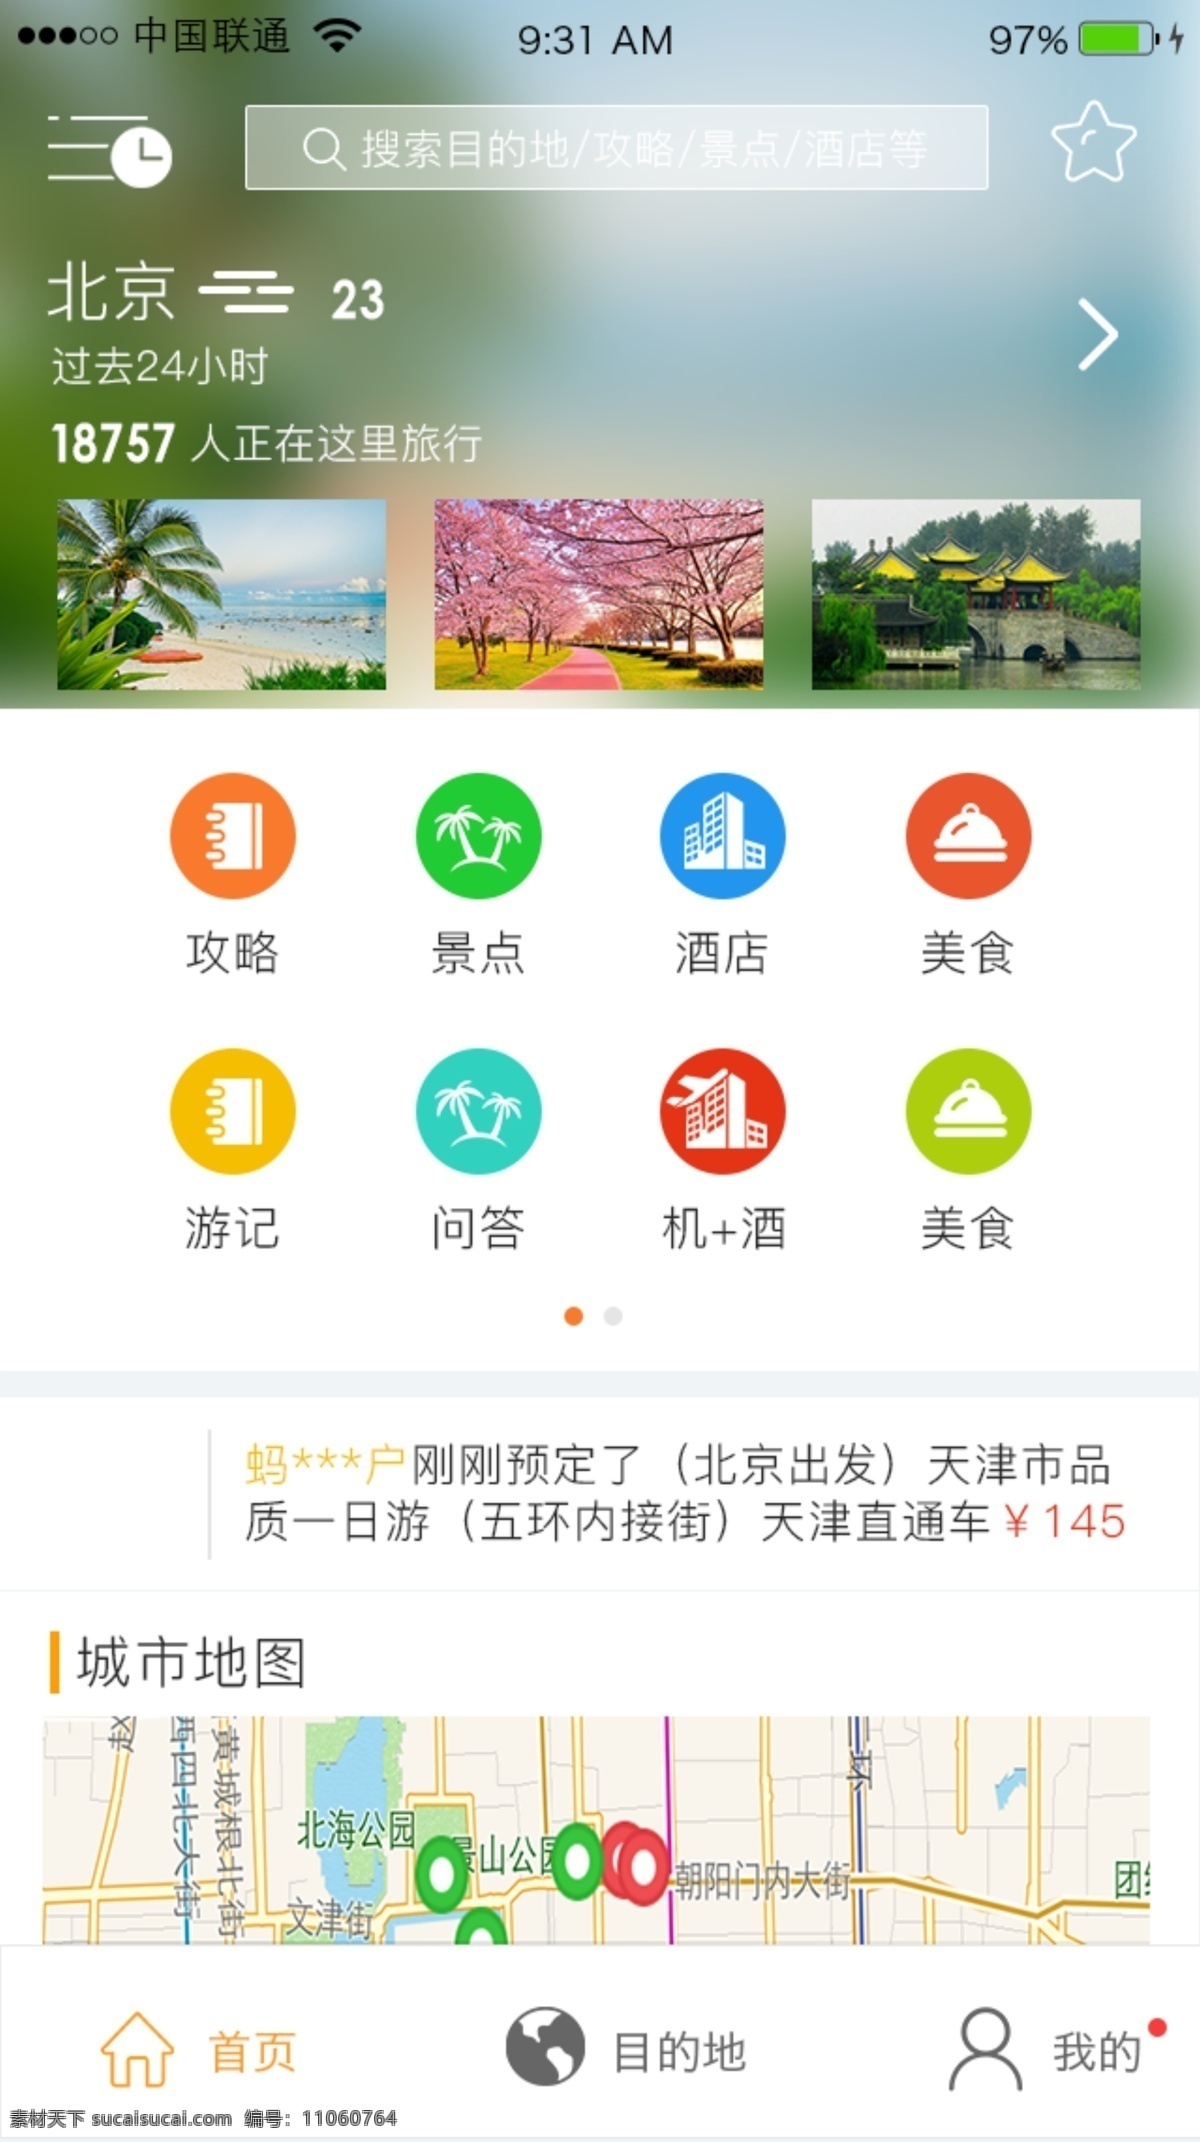 旅游界面2 旅游app 旅游界面 旅游首页